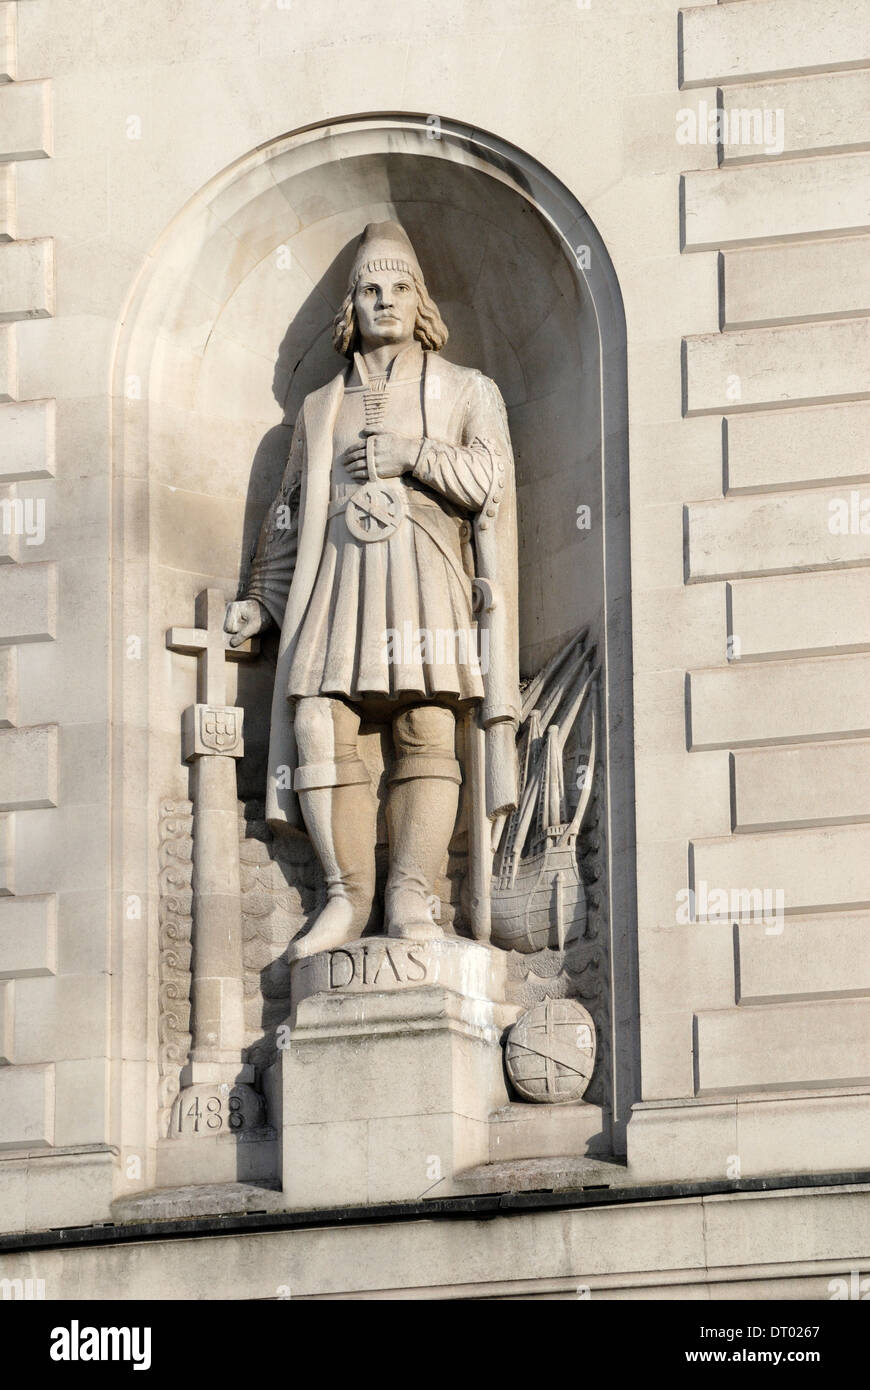 Londra, Inghilterra, Regno Unito. Statua di Bartolomeu / Bartolomeo Dias (l'esploratore portoghese) sulla facciata del Sud Africa House, Trafalgar Square Foto Stock